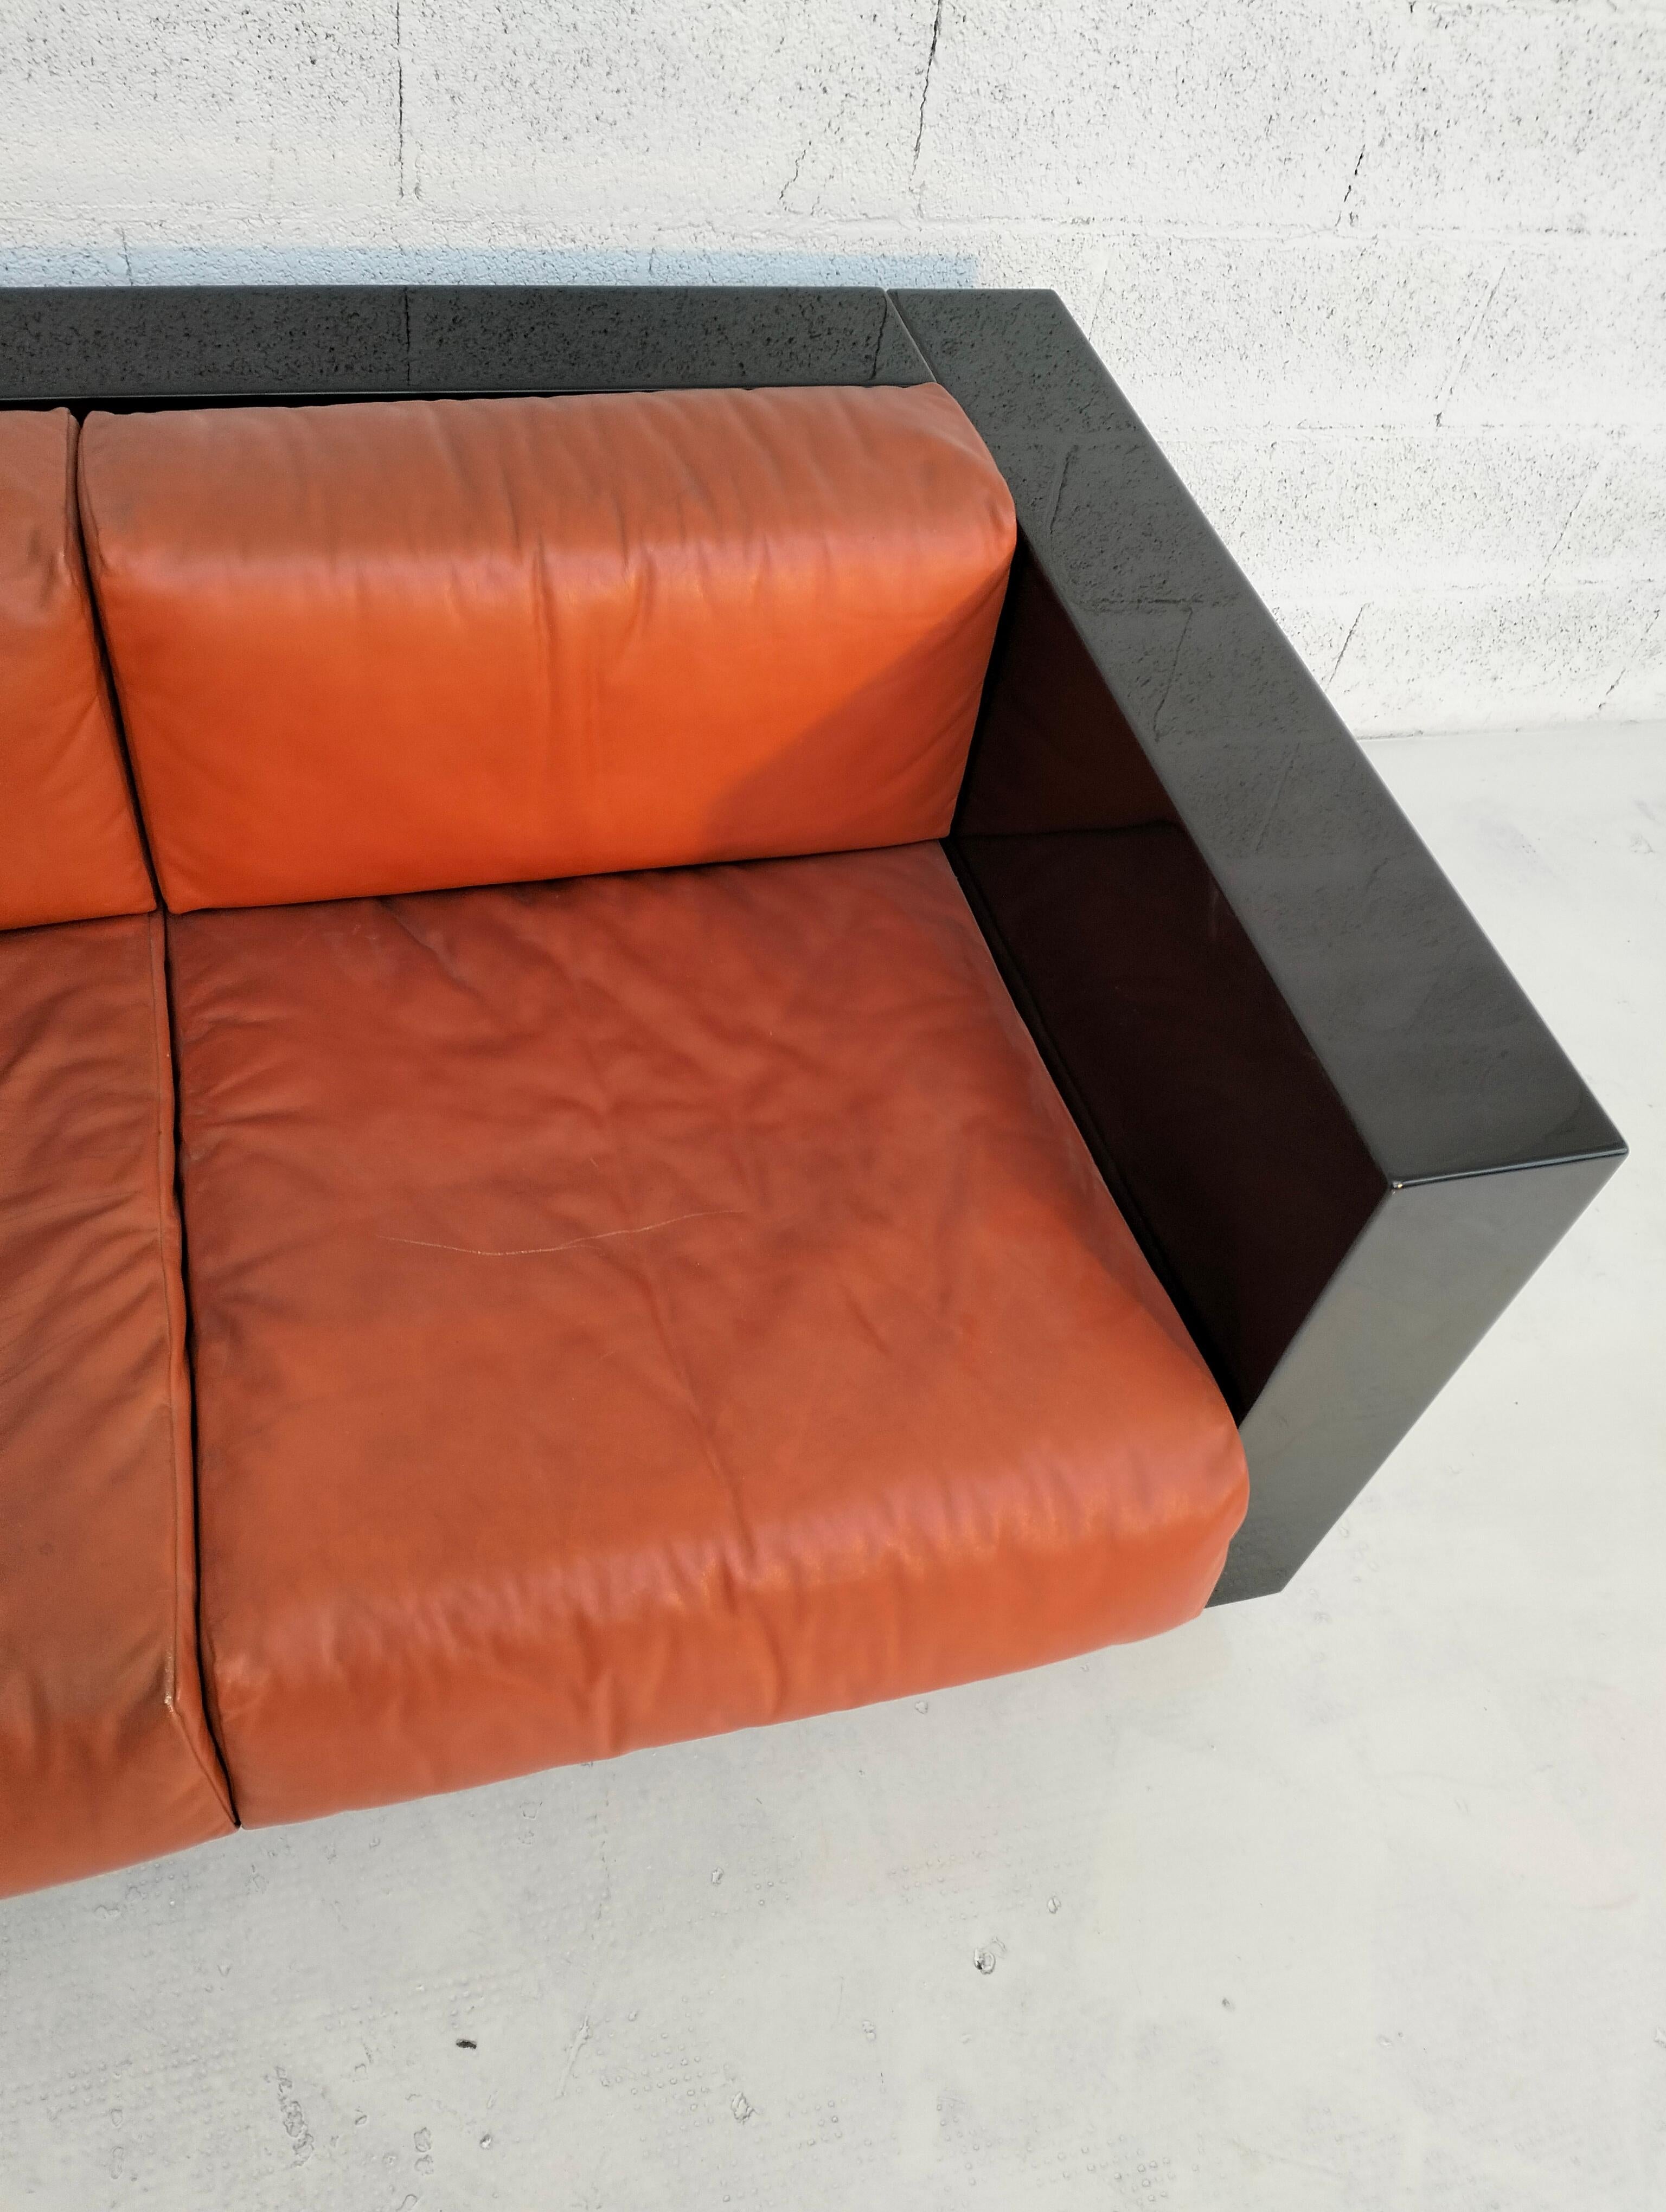 Black “Saratoga” sofa by Massimo and Lella Vignelli for Poltronova 60s, 70s In Good Condition For Sale In Padova, IT